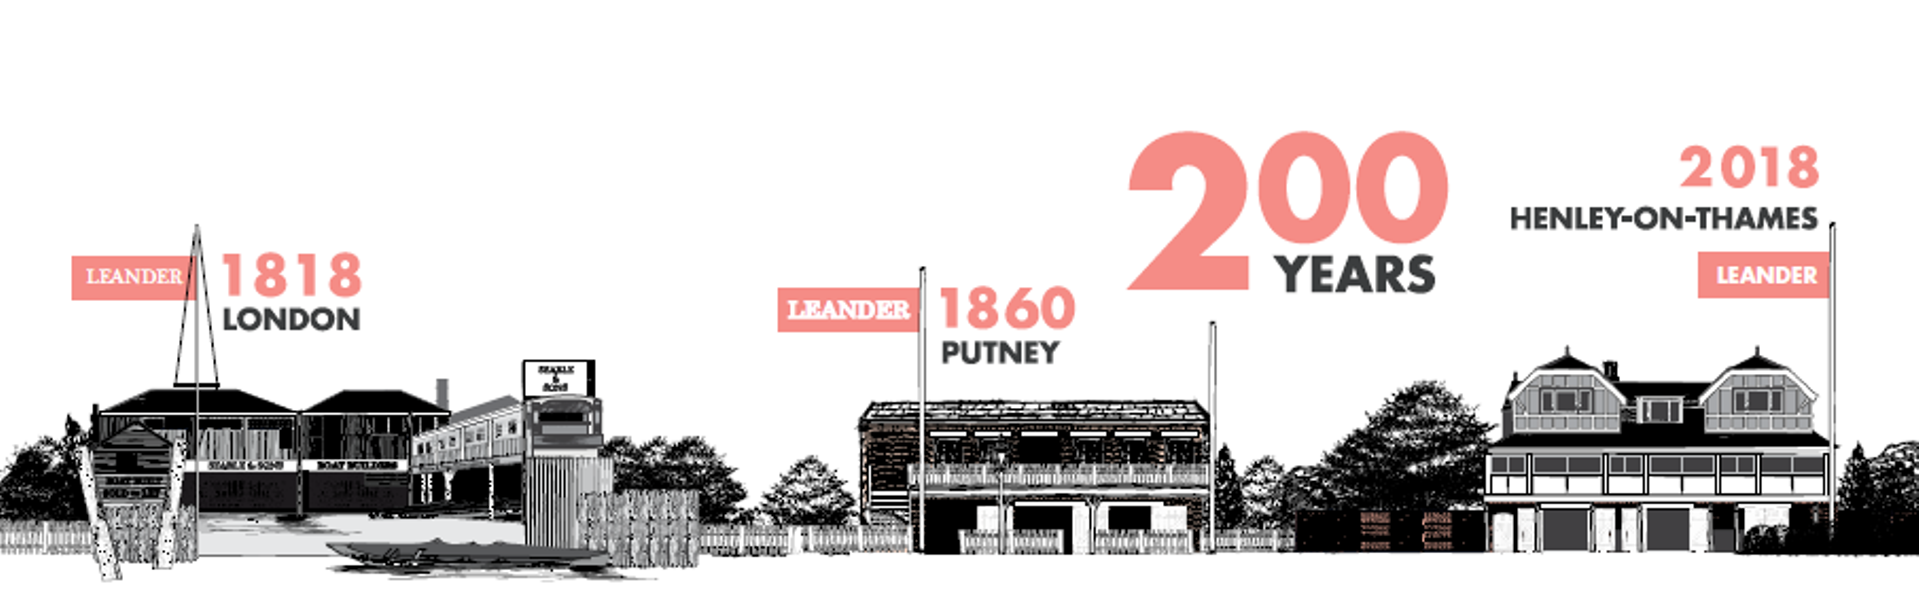 Leander is celebrating its bicentenary ©Leander